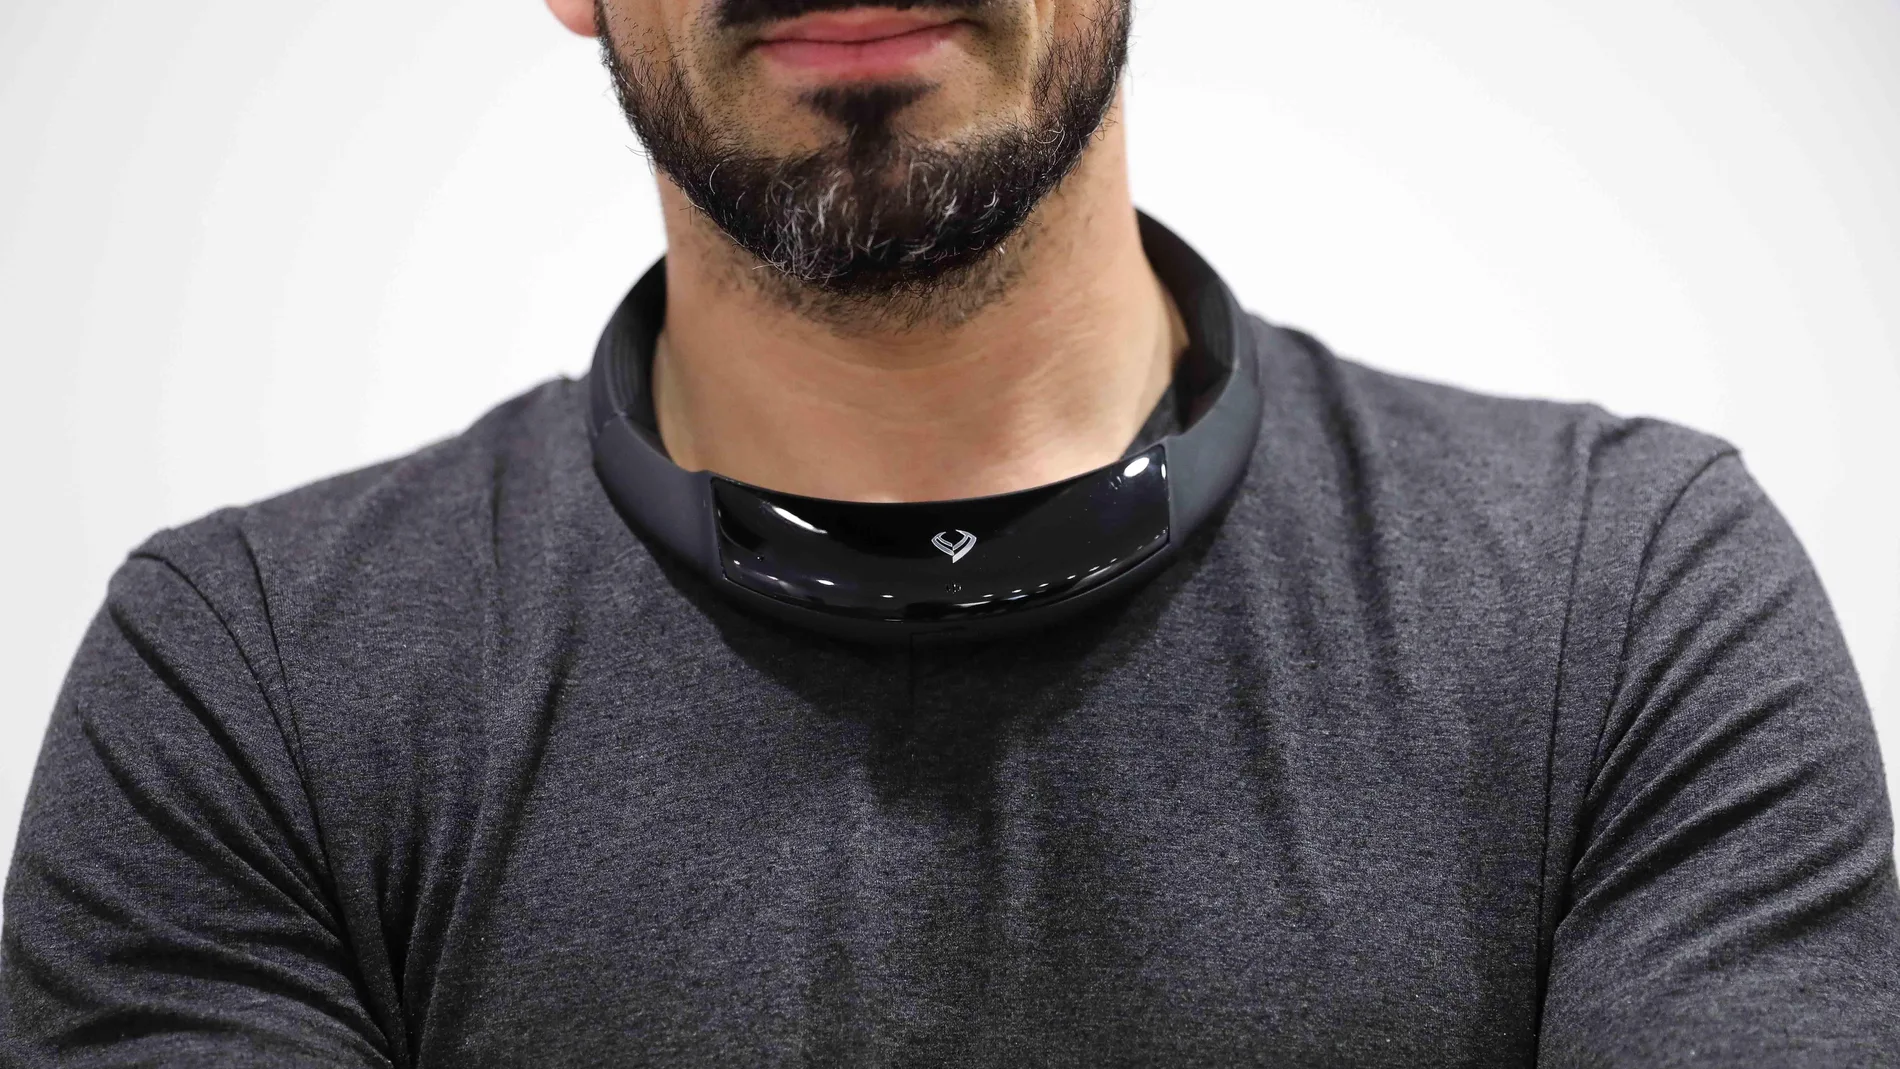 Detalle del Necksound, pionero dispositivo de sonido no invasivo, único en el mundo, con forma de collar sin cables y que revoluciona el escuchar música de forma inalámbrica, con altos estándares de diseño y pensado para favorecer la seguridad